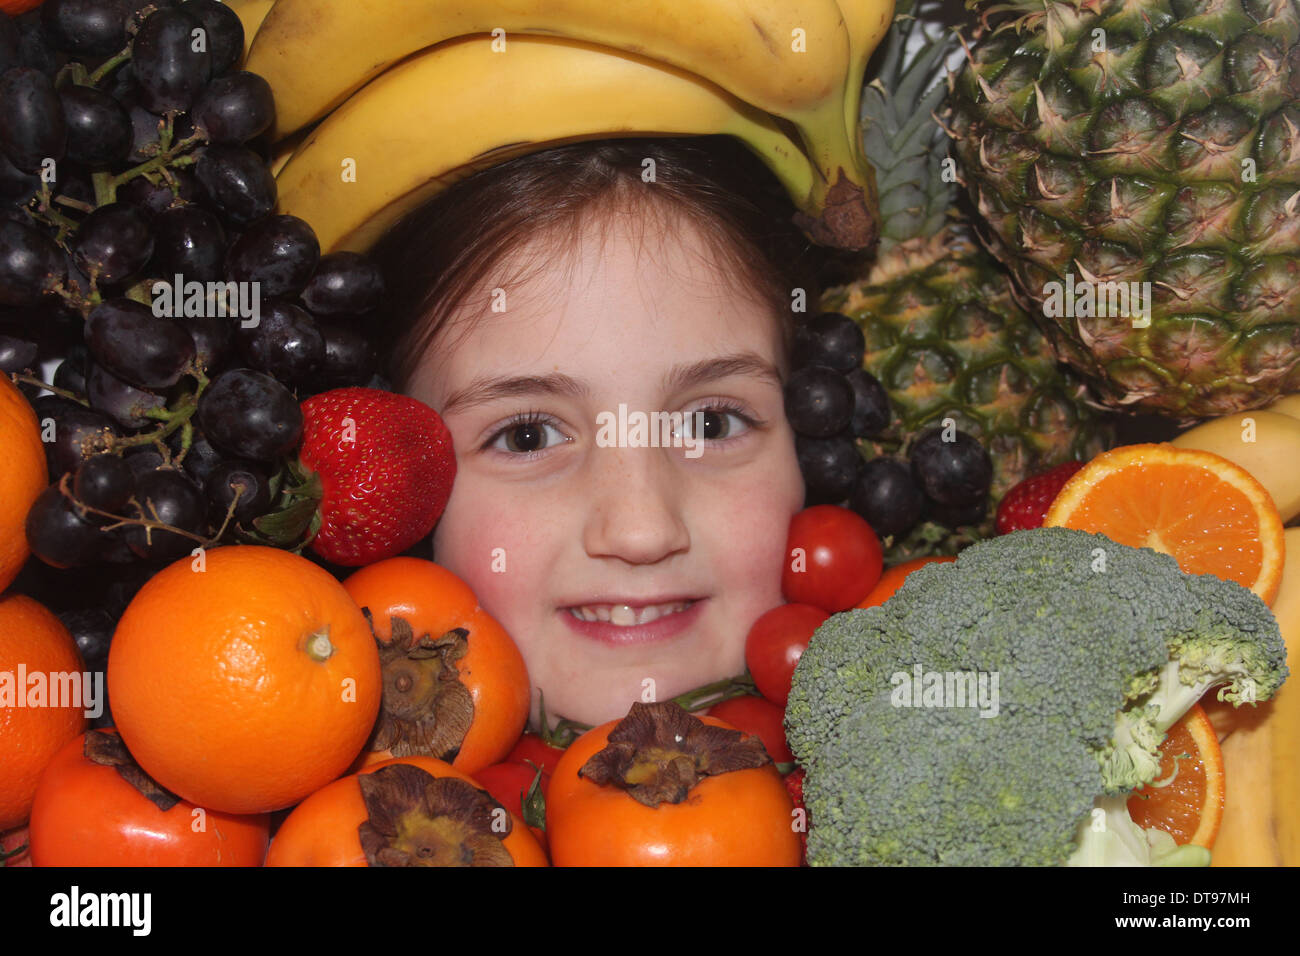 Los jóvenes caucásicos cara de la niña rodeada de frutales y hortalizas, cinco al día, Inglaterra, Reino Unido. Foto de stock